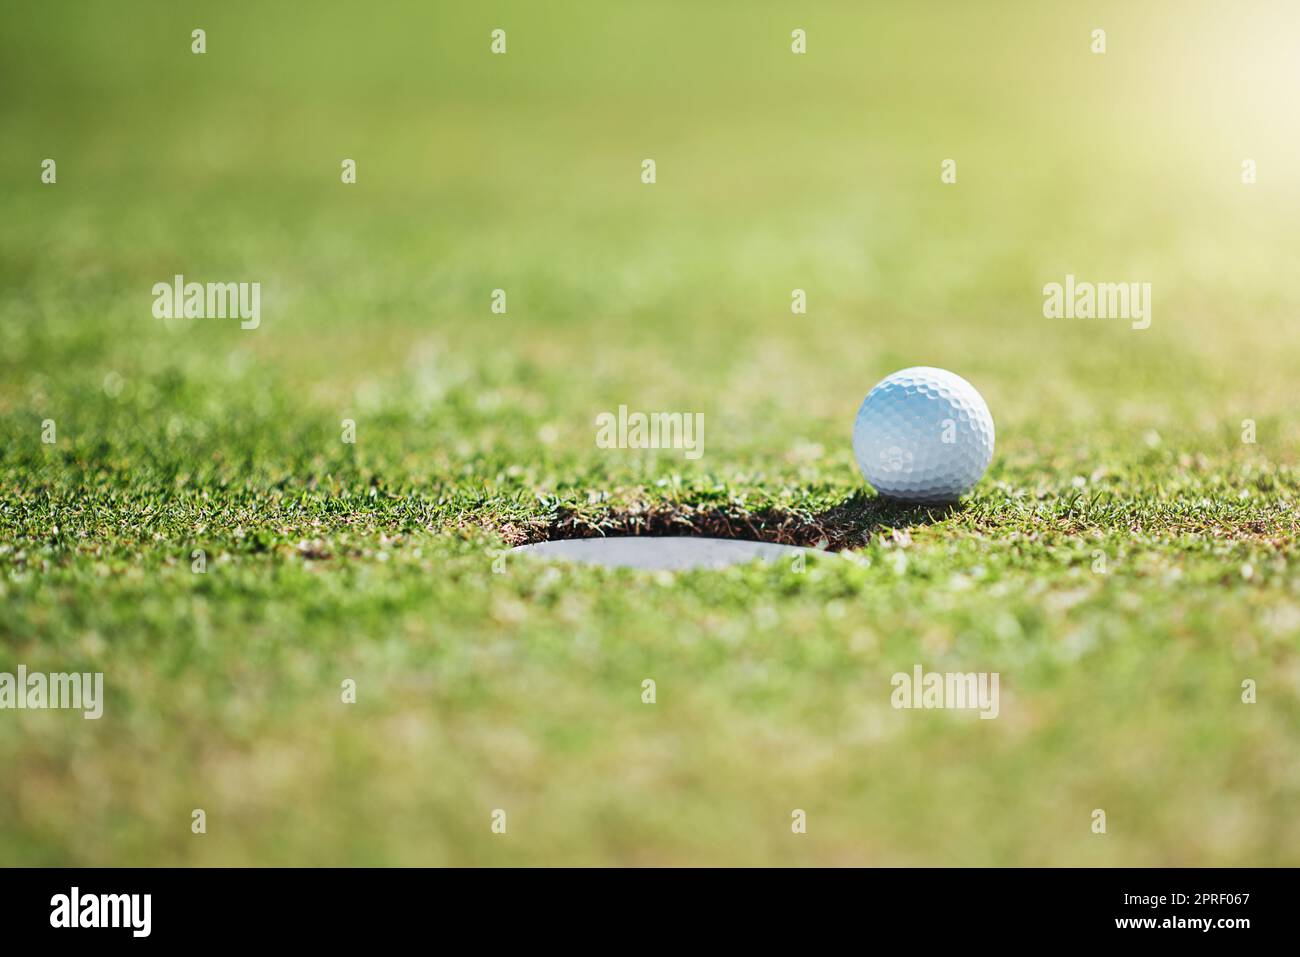 Così vicino ma nessun sigaro. Colpo di primo piano di una palla da golf sul bordo di una buca all'aperto su un campo da golf durante il giorno. Foto Stock